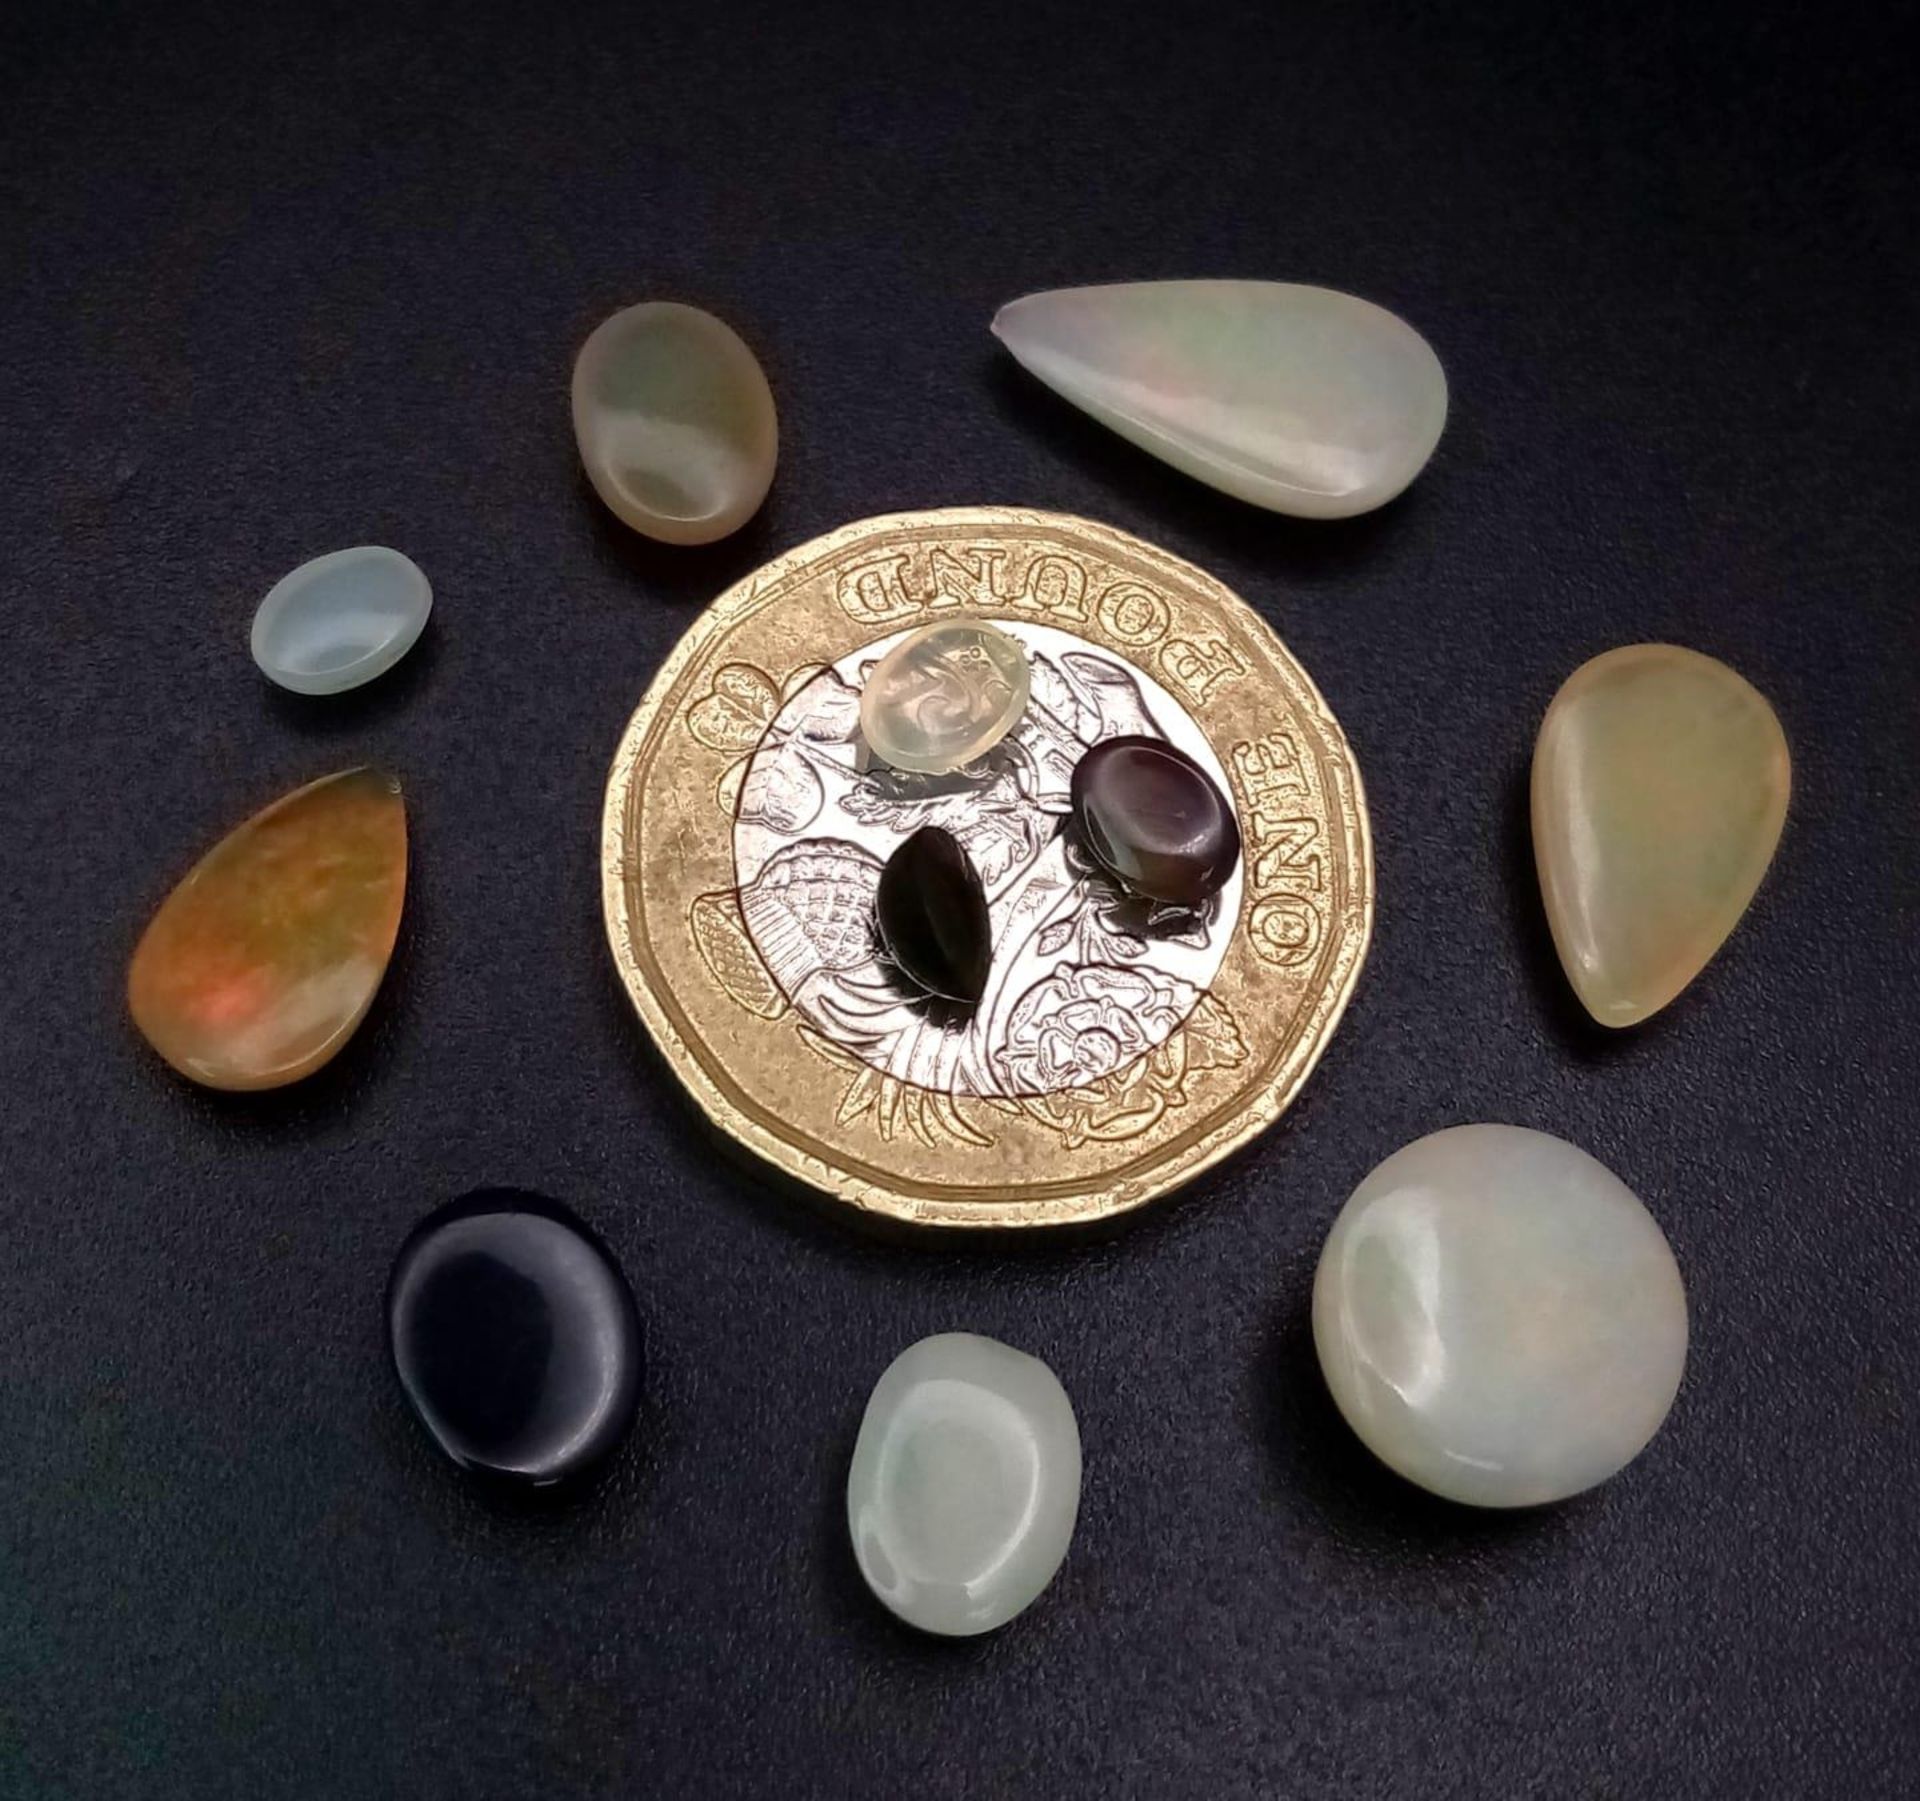 An 11ctw Lot of Ethiopian Opals. 11 stones in a clip-open case. - Bild 3 aus 4